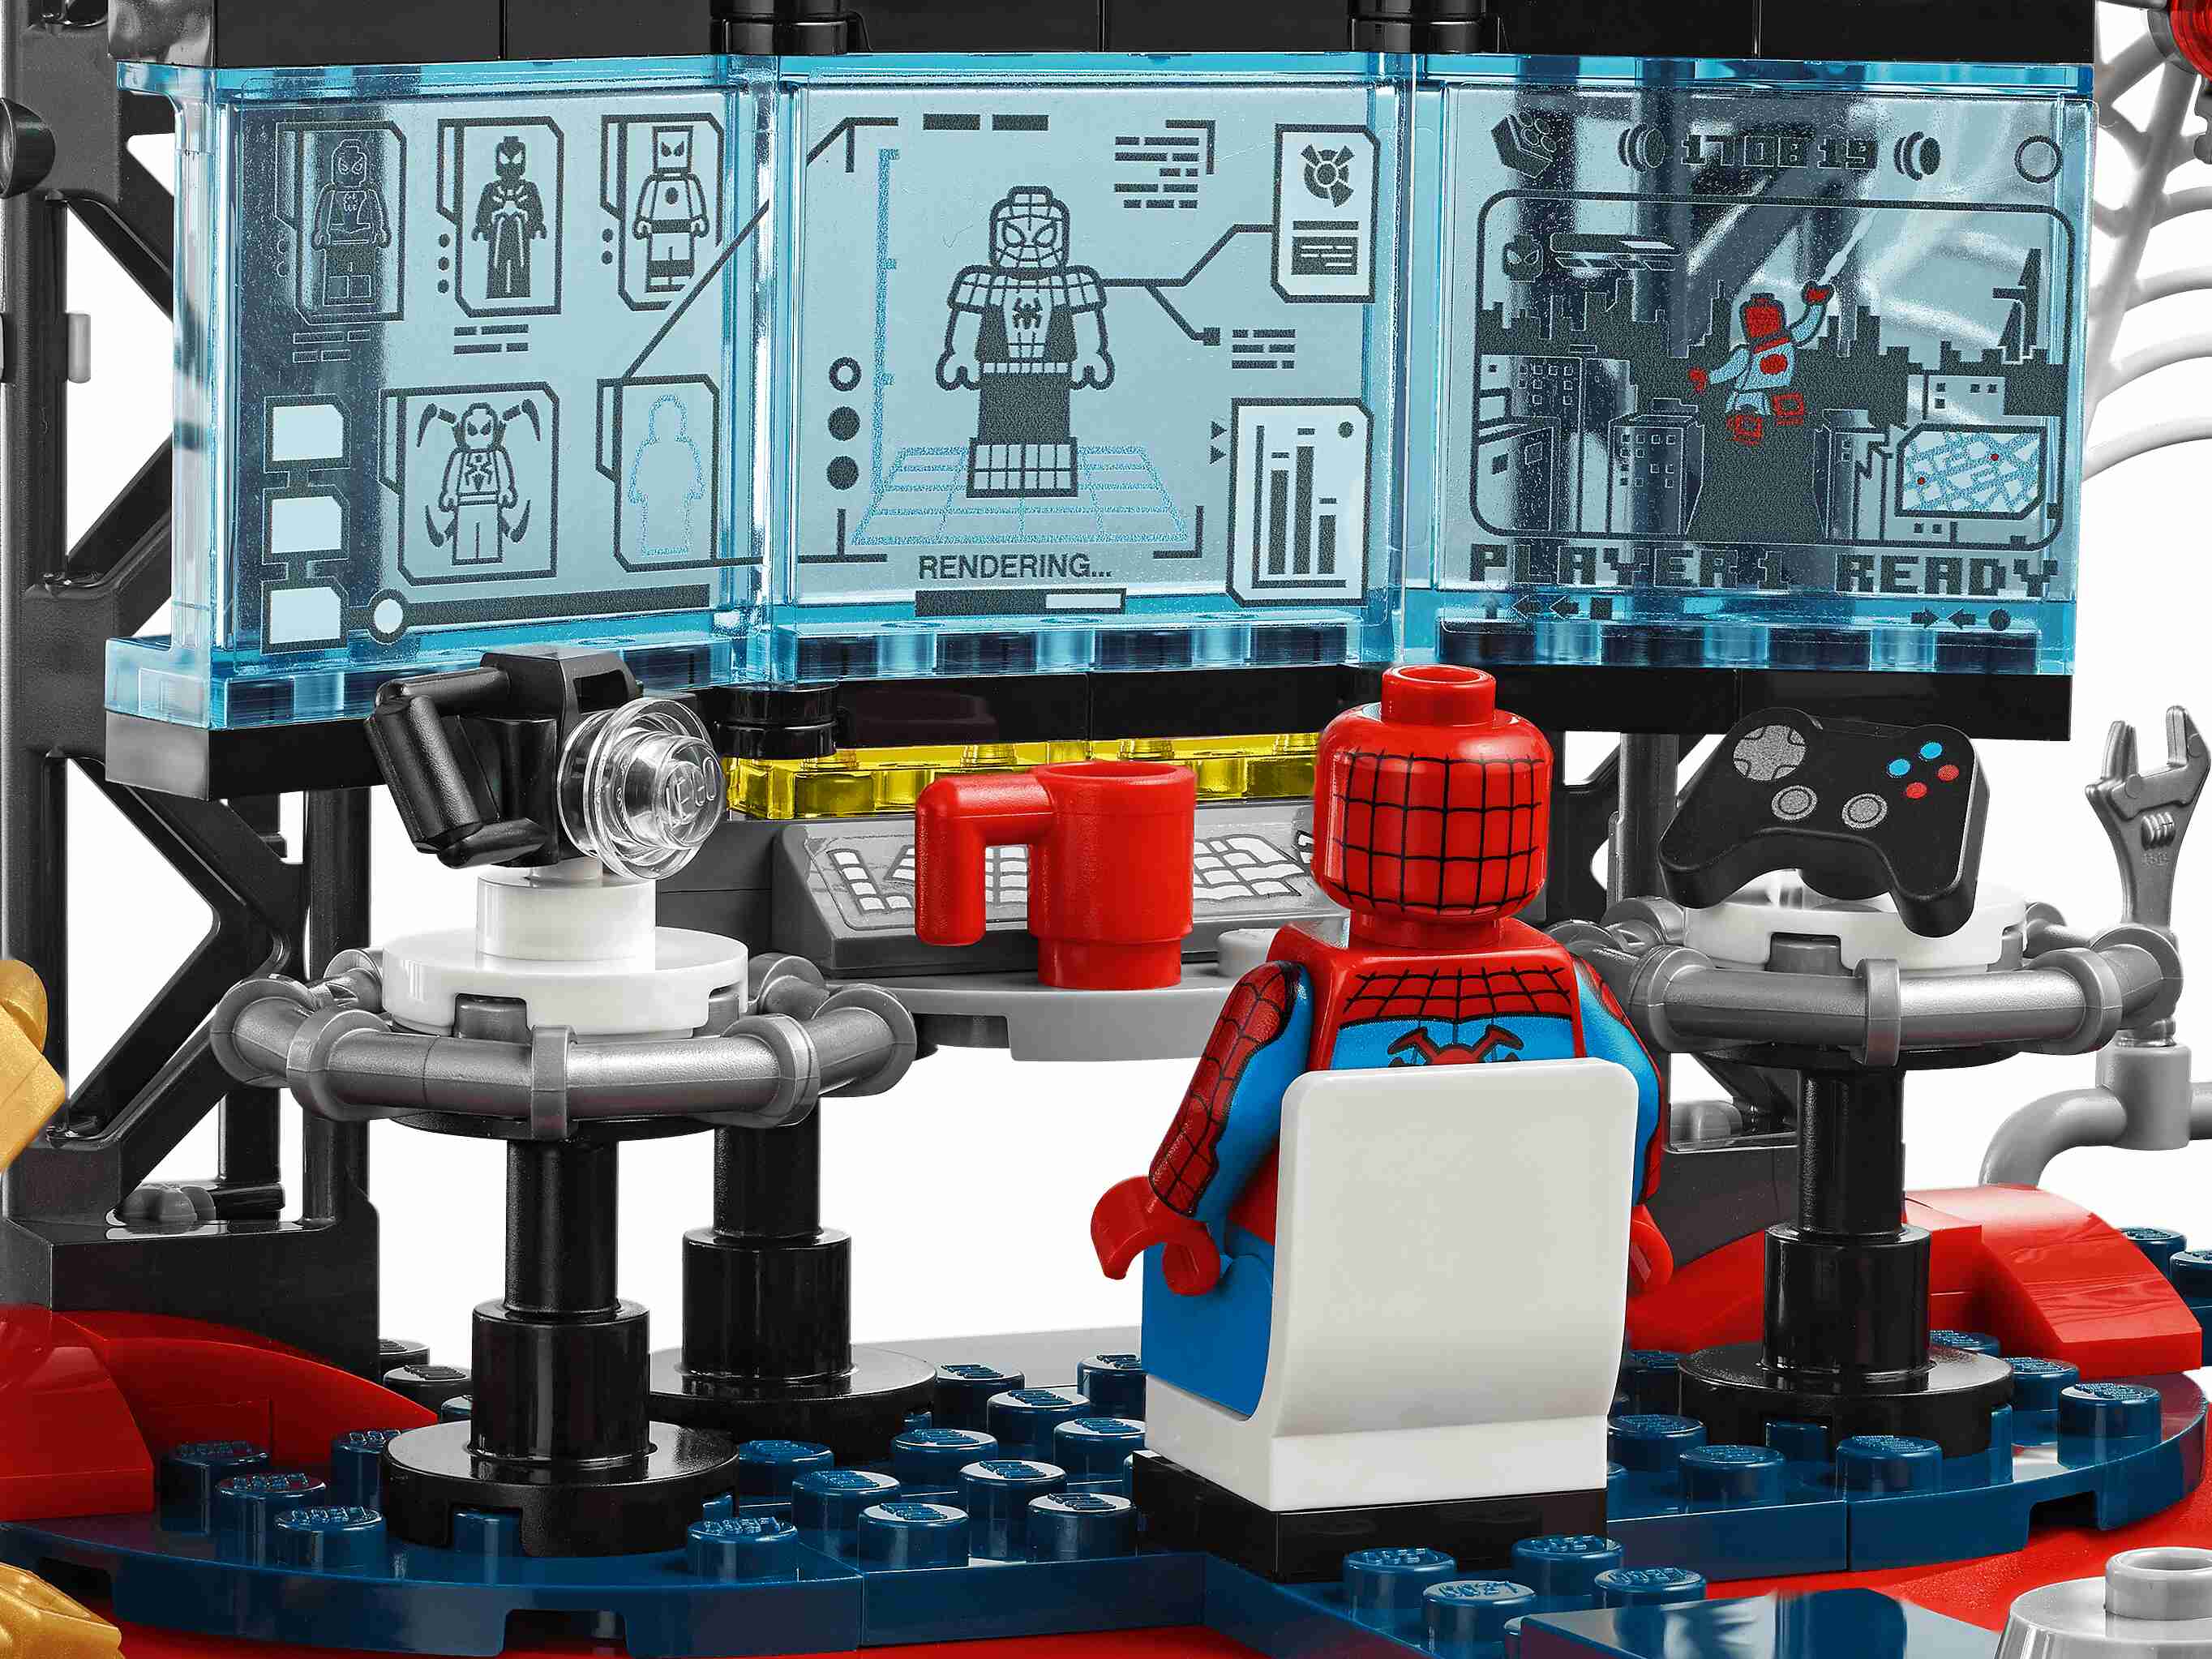 LEGO 76175 Marvel Angriff auf Spider-Mans Versteck mit Green Goblin und Venom 